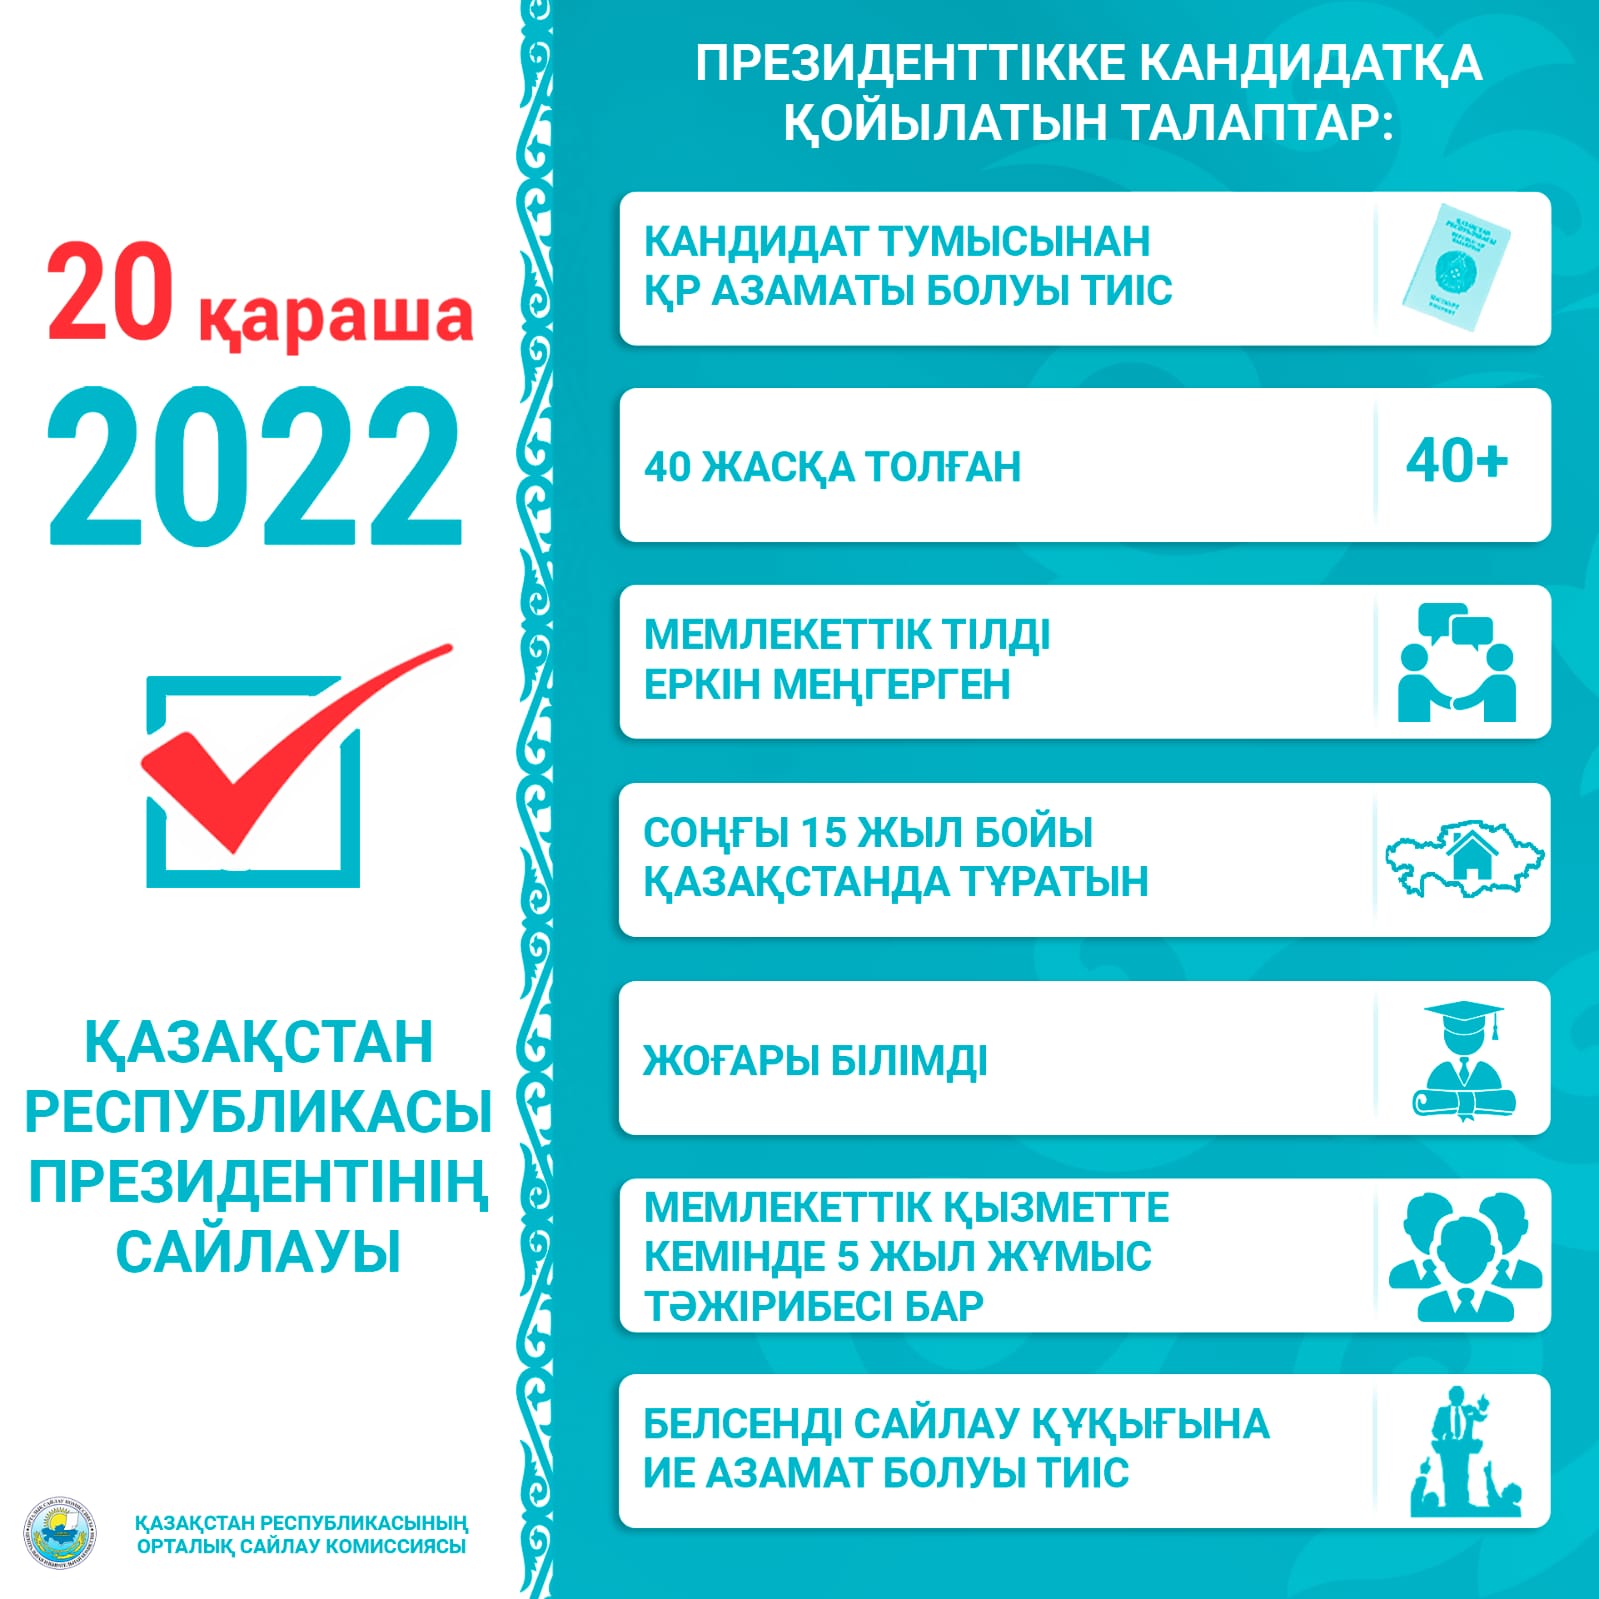 20 НОЯБРЯ 2022 ГОДА ВЫБОРЫ ПРЕЗИДЕНТА РЕСПУБЛИКИ КАЗАХСТАН